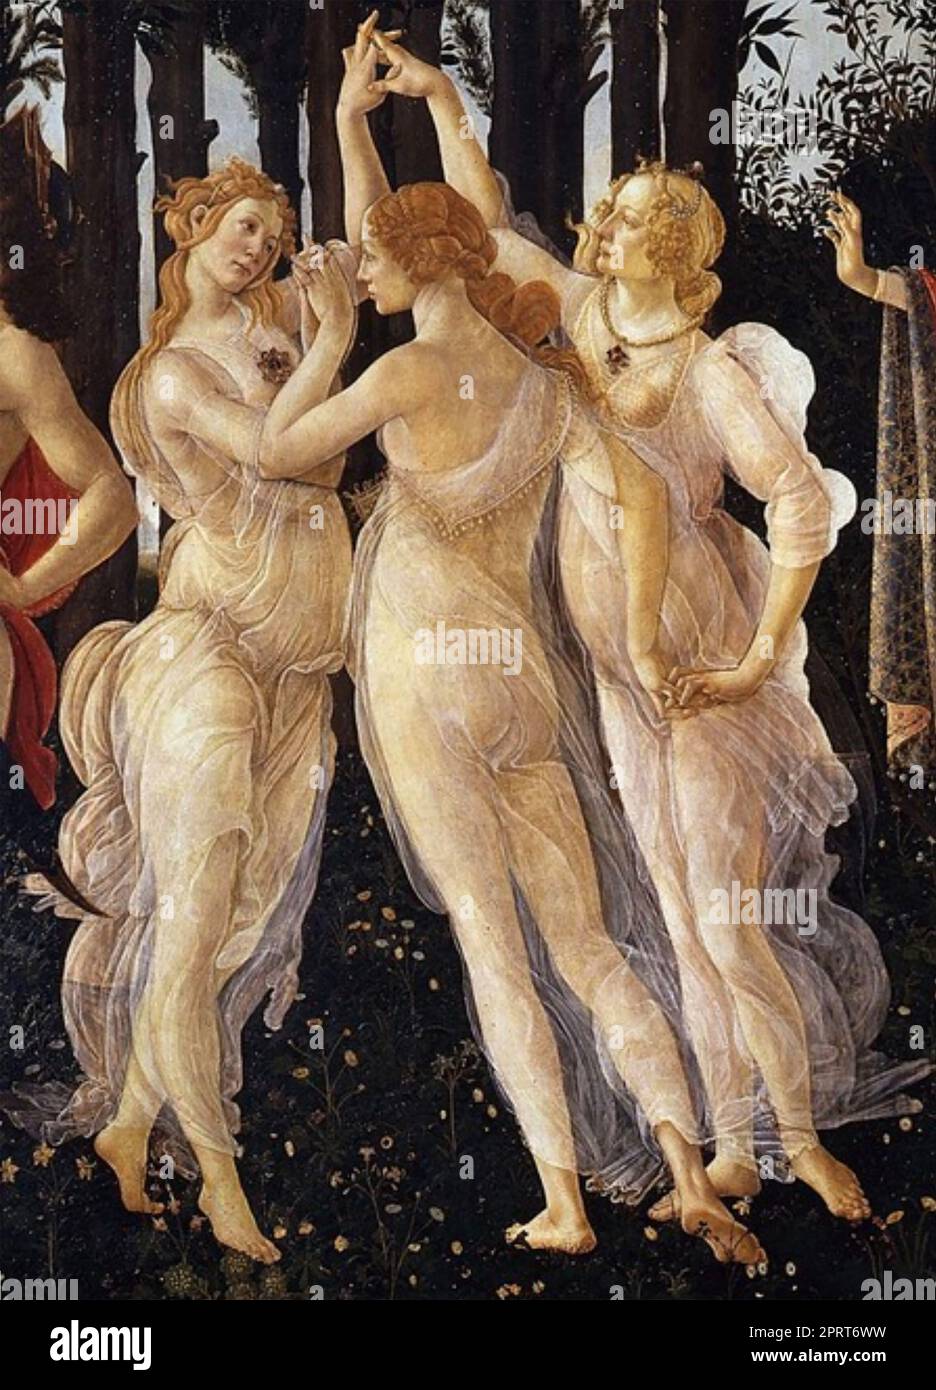 LES TROIS GRÂCES dans le cadre de la peinture de Sandro Botticelli de Primavera (printemps) c 1482 Banque D'Images